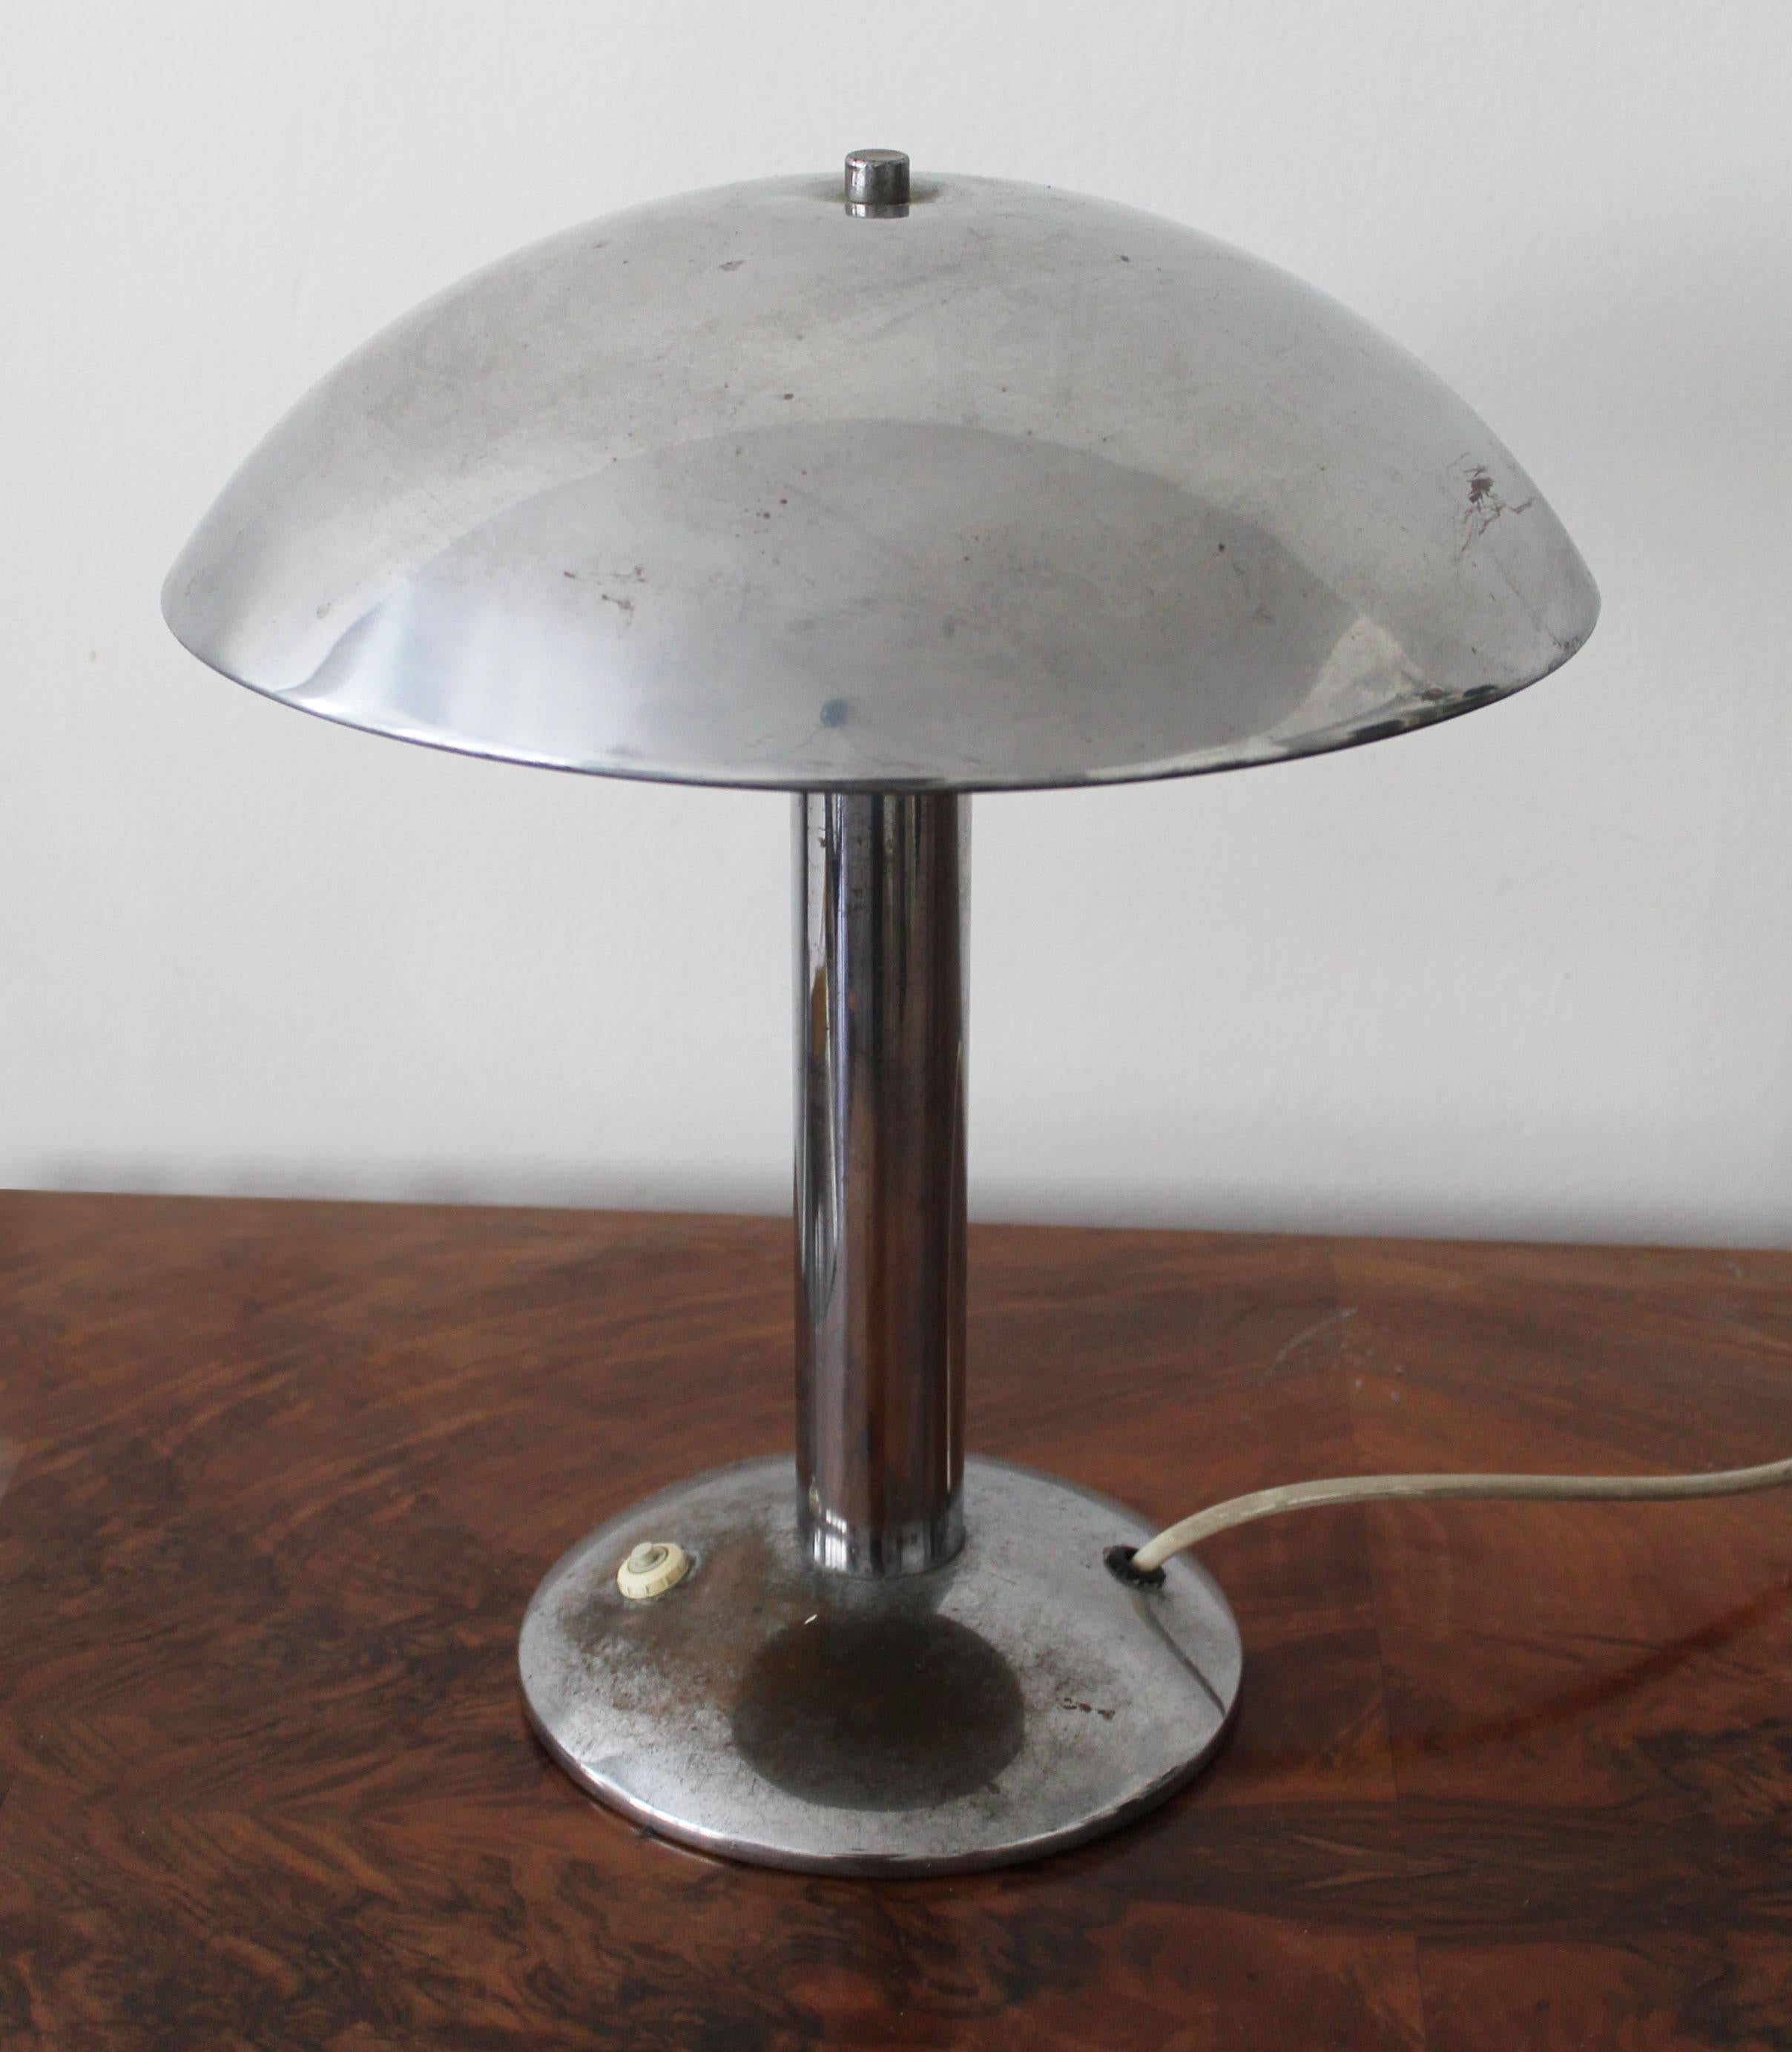 Czech 1930's Bauhaus Table Lamp